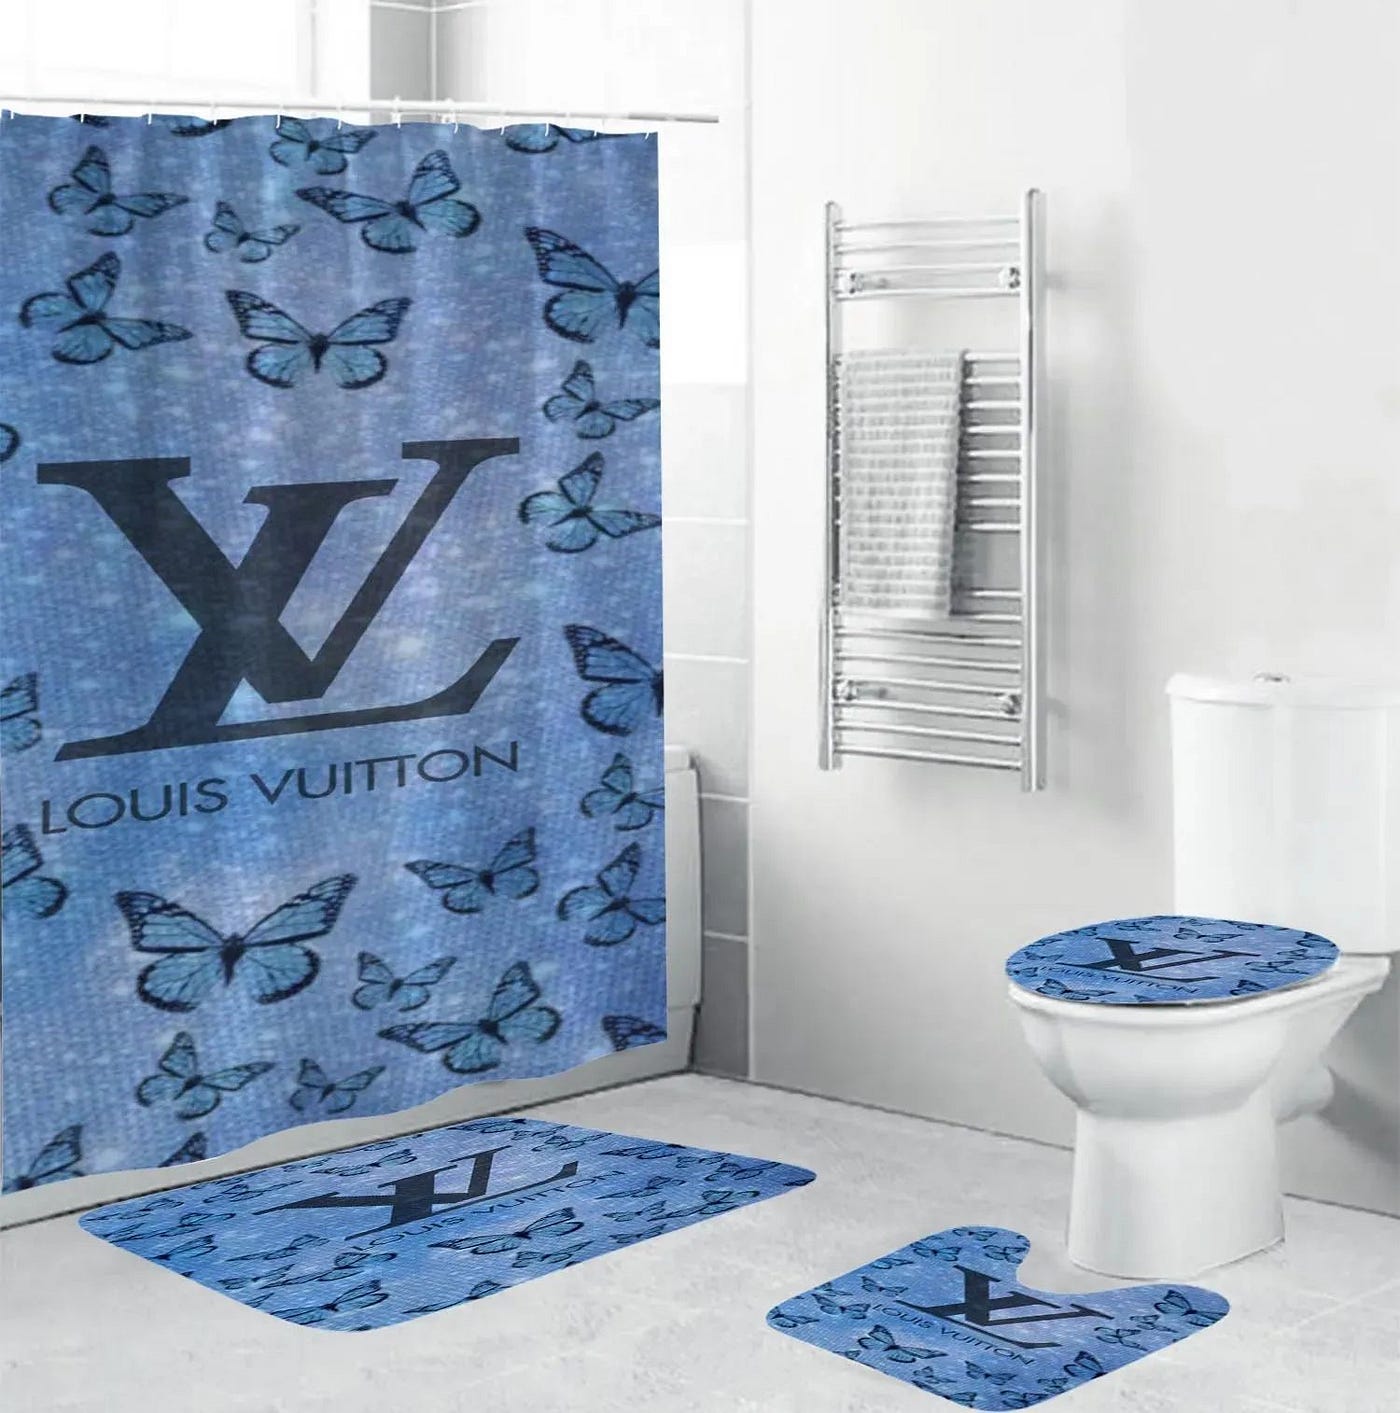 Louis Vuitton Bathroom Set Bath Mat Home Decor Luxury Fashion